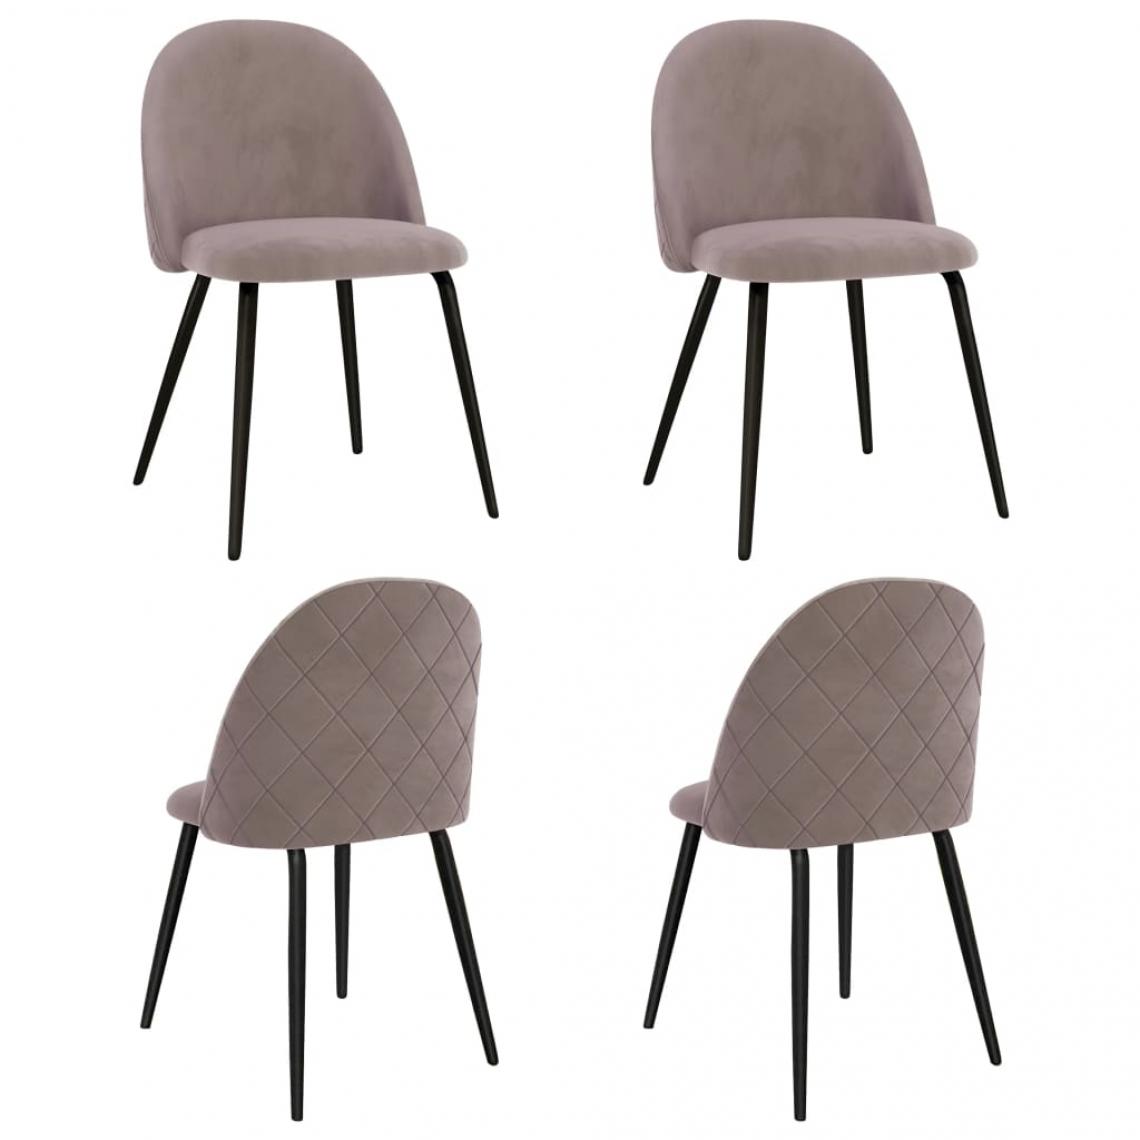 Decoshop26 - Lot de 4 chaises de salle à manger cuisine design moderne tissu rose CDS021913 - Chaises